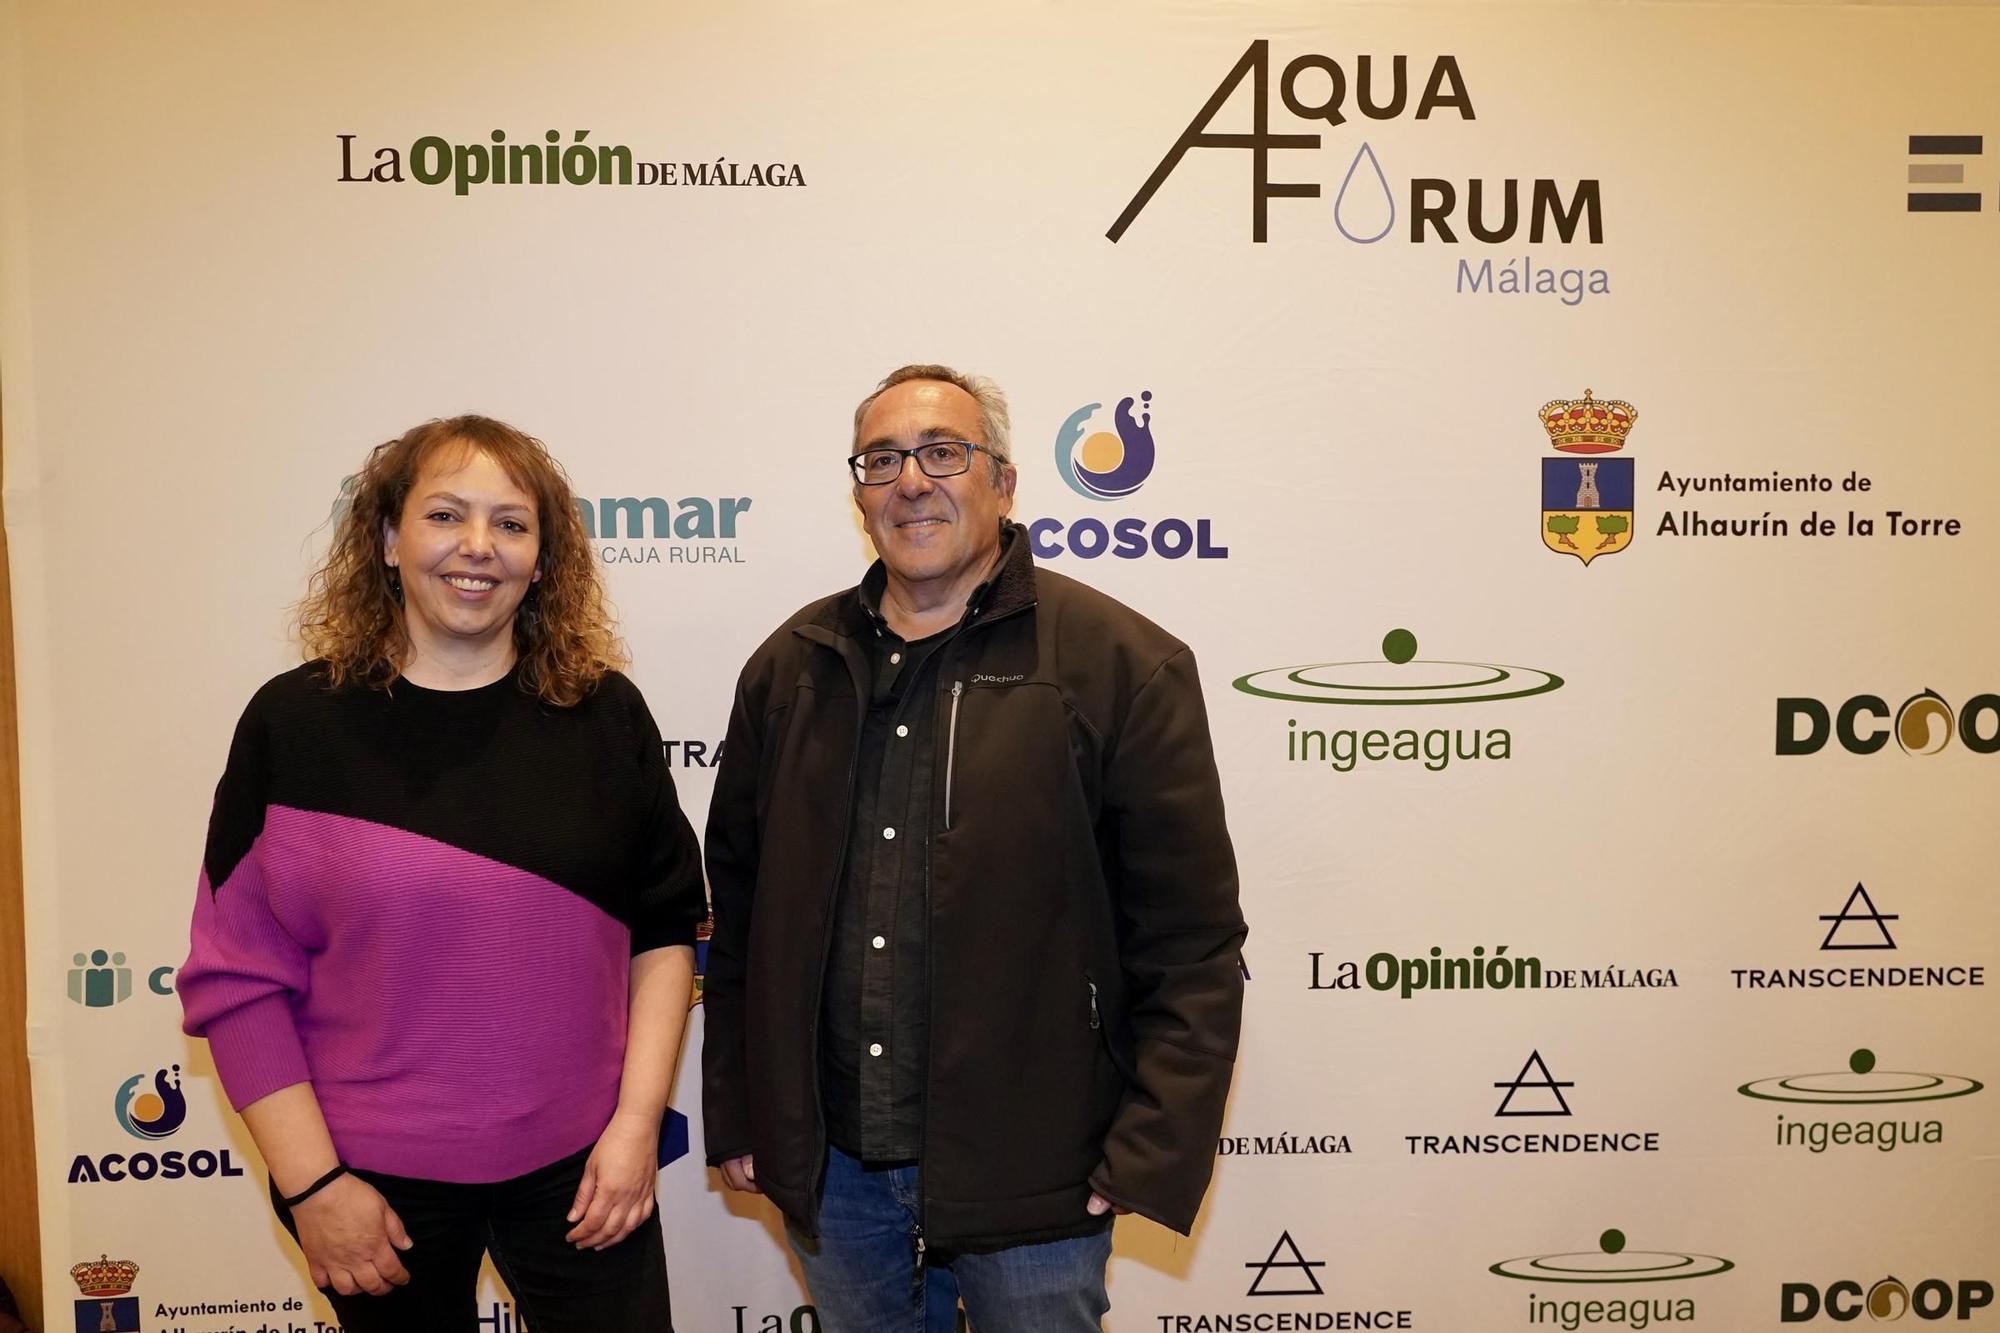 La Opinión de Málaga celebra Aquaforum para debatir sobre la política de agua